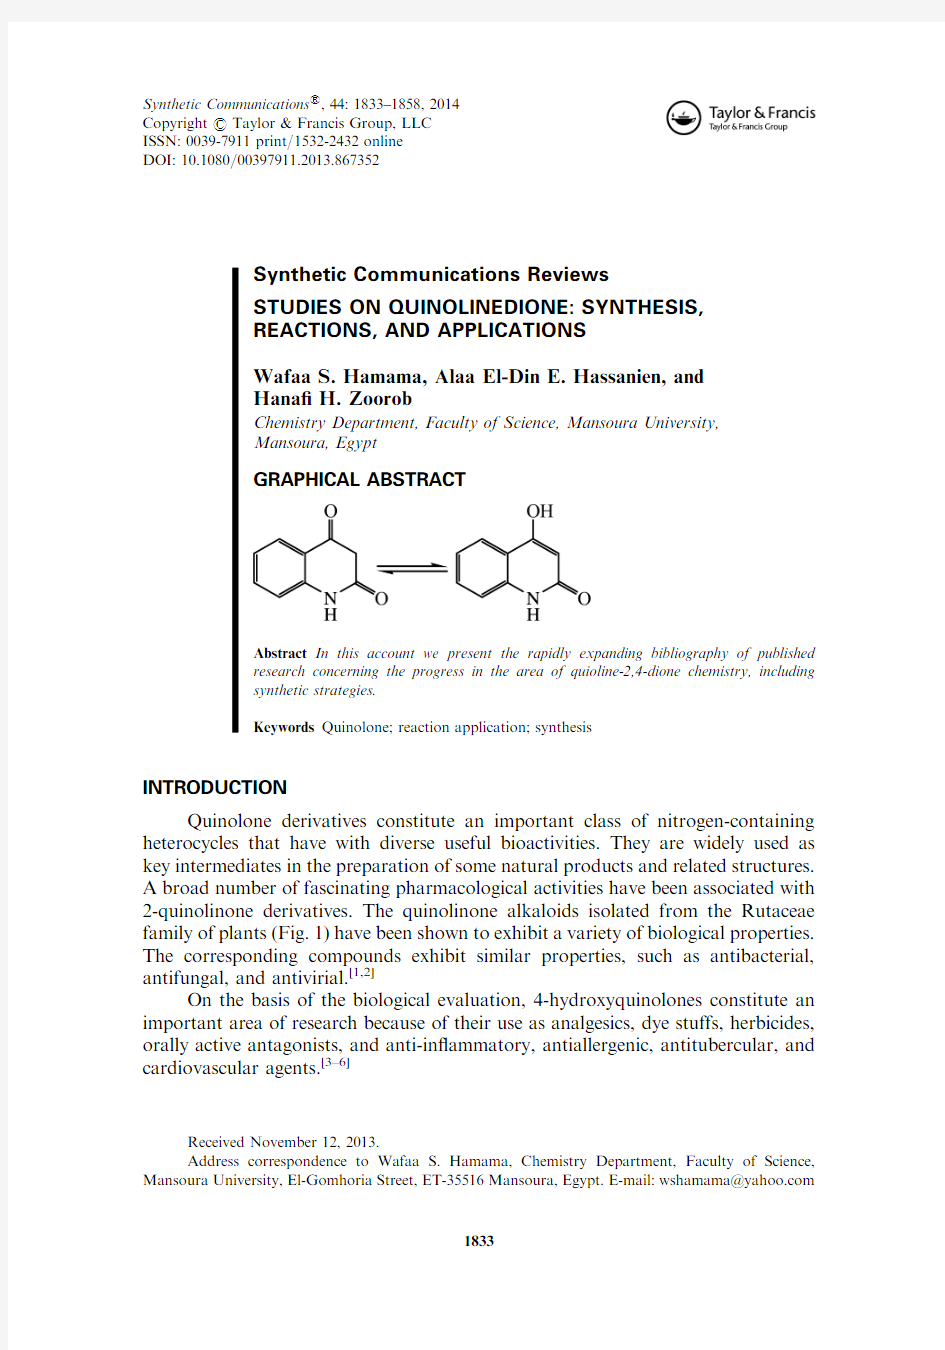 喹啉酮类化合物合成与应用